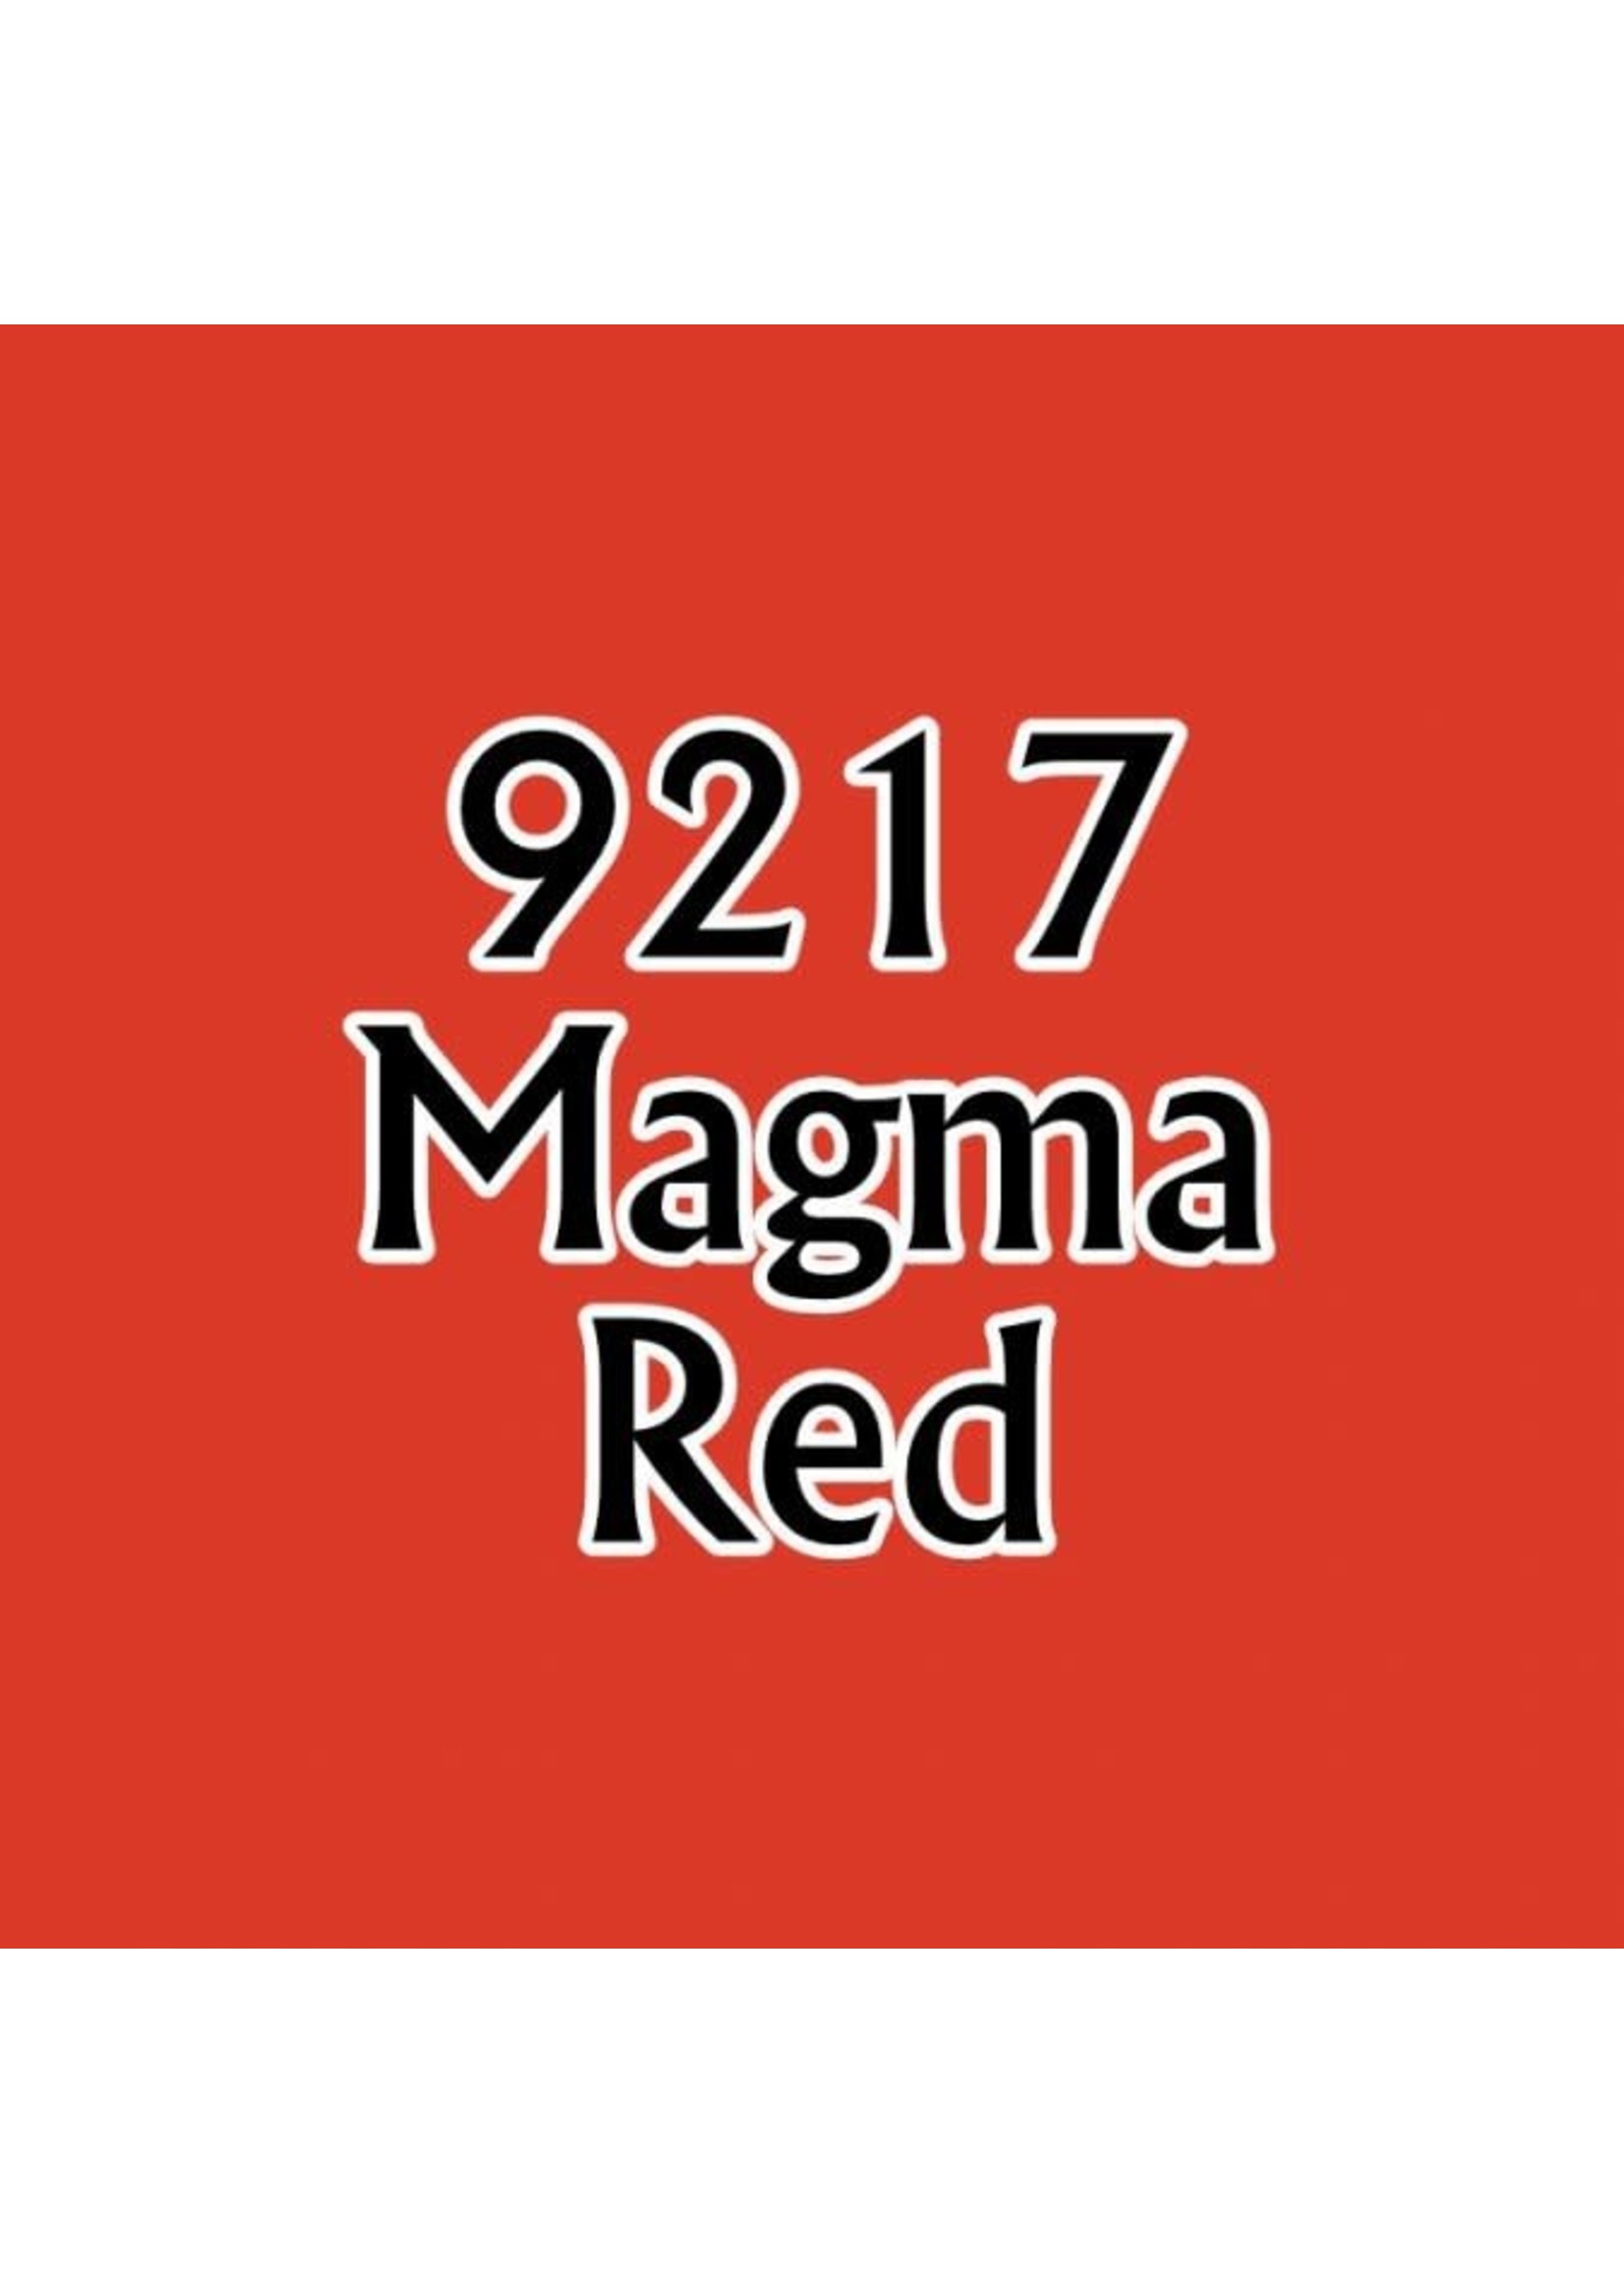 Reaper Magma Red